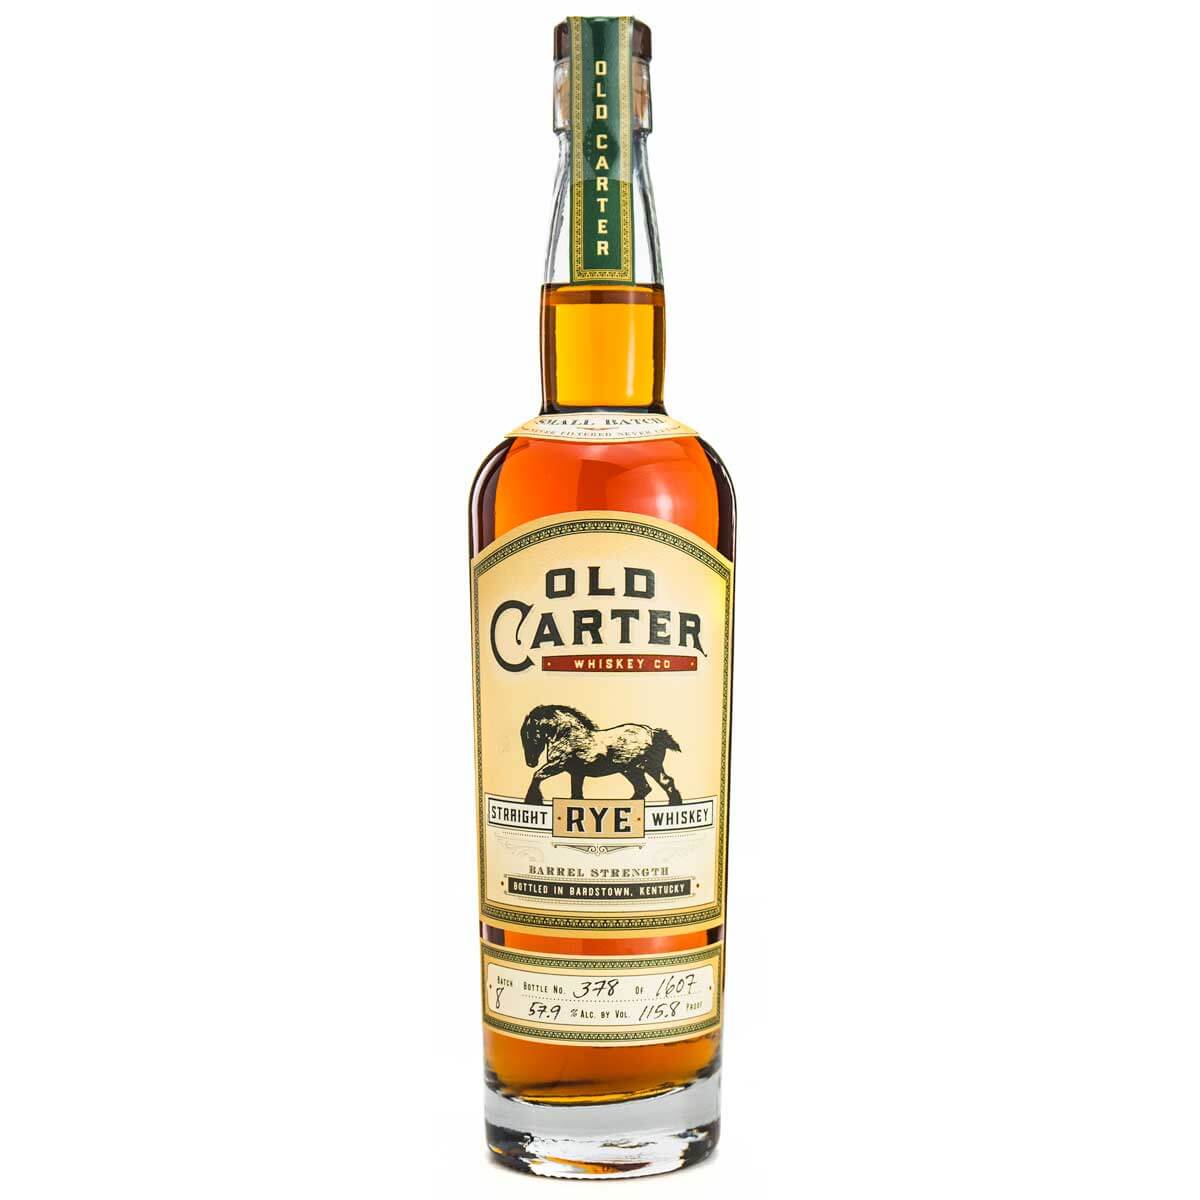 Old Carter Rye Whiskey bottle